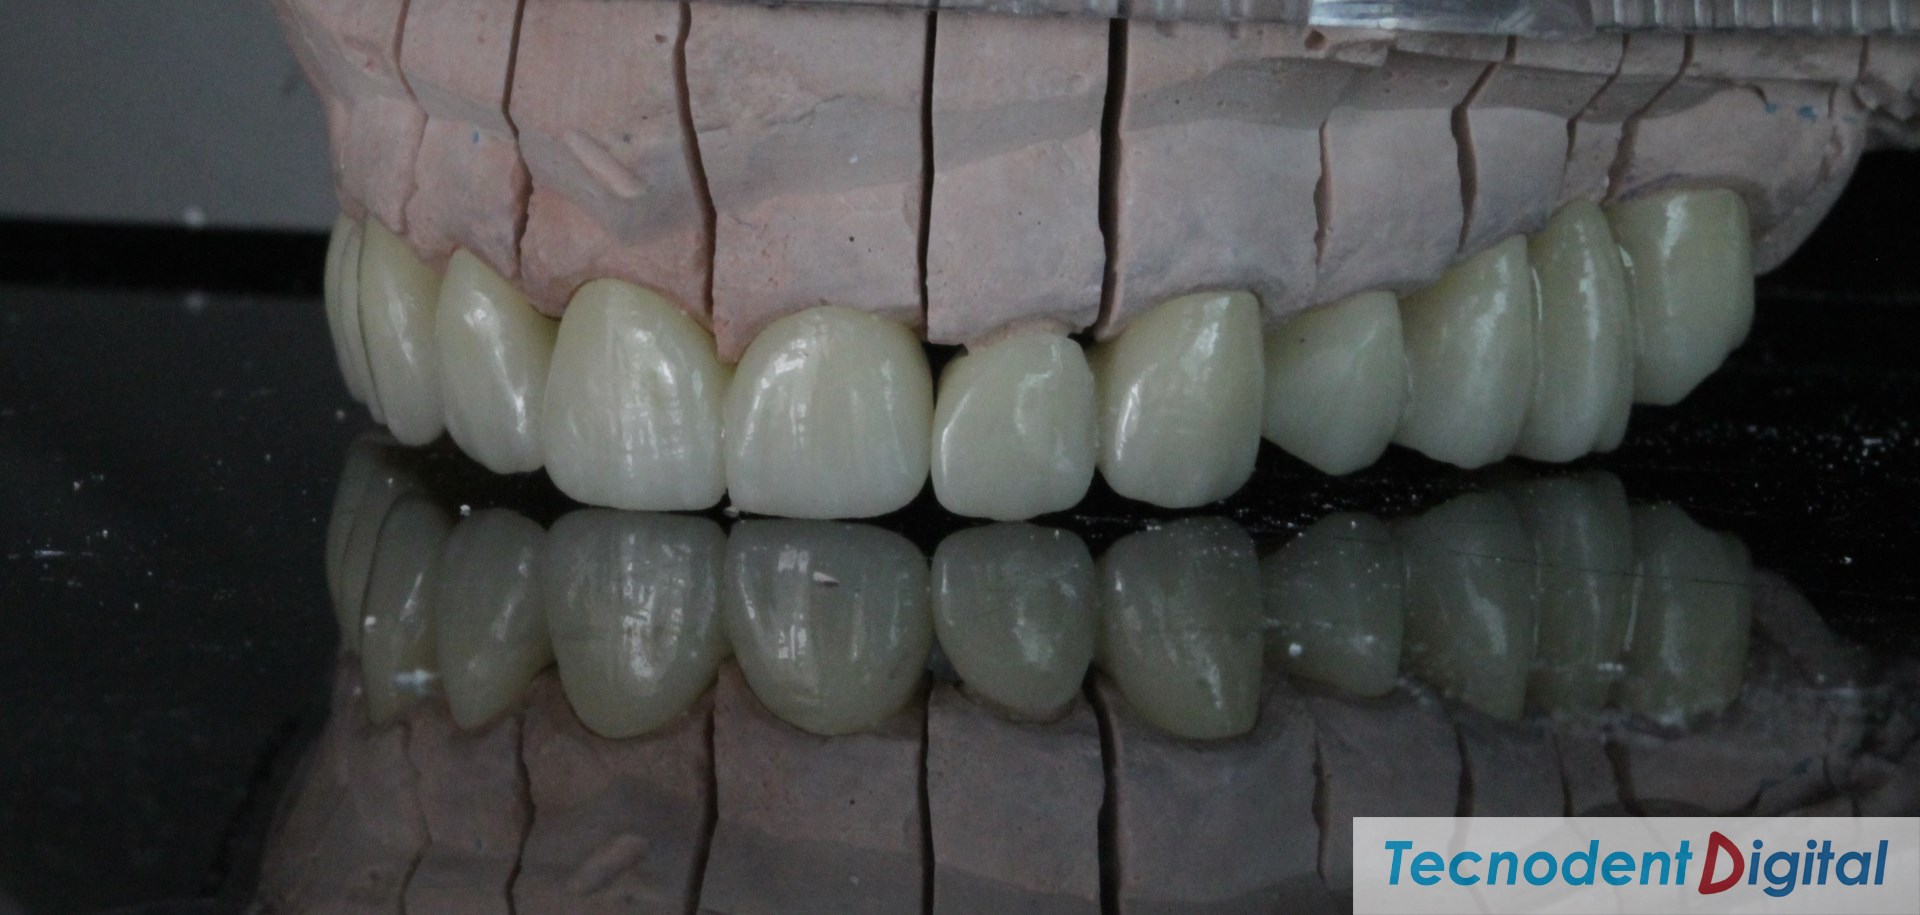 Centro-de-Fresado-Gandia-Laboratorio-Dental-odontologia-estetica